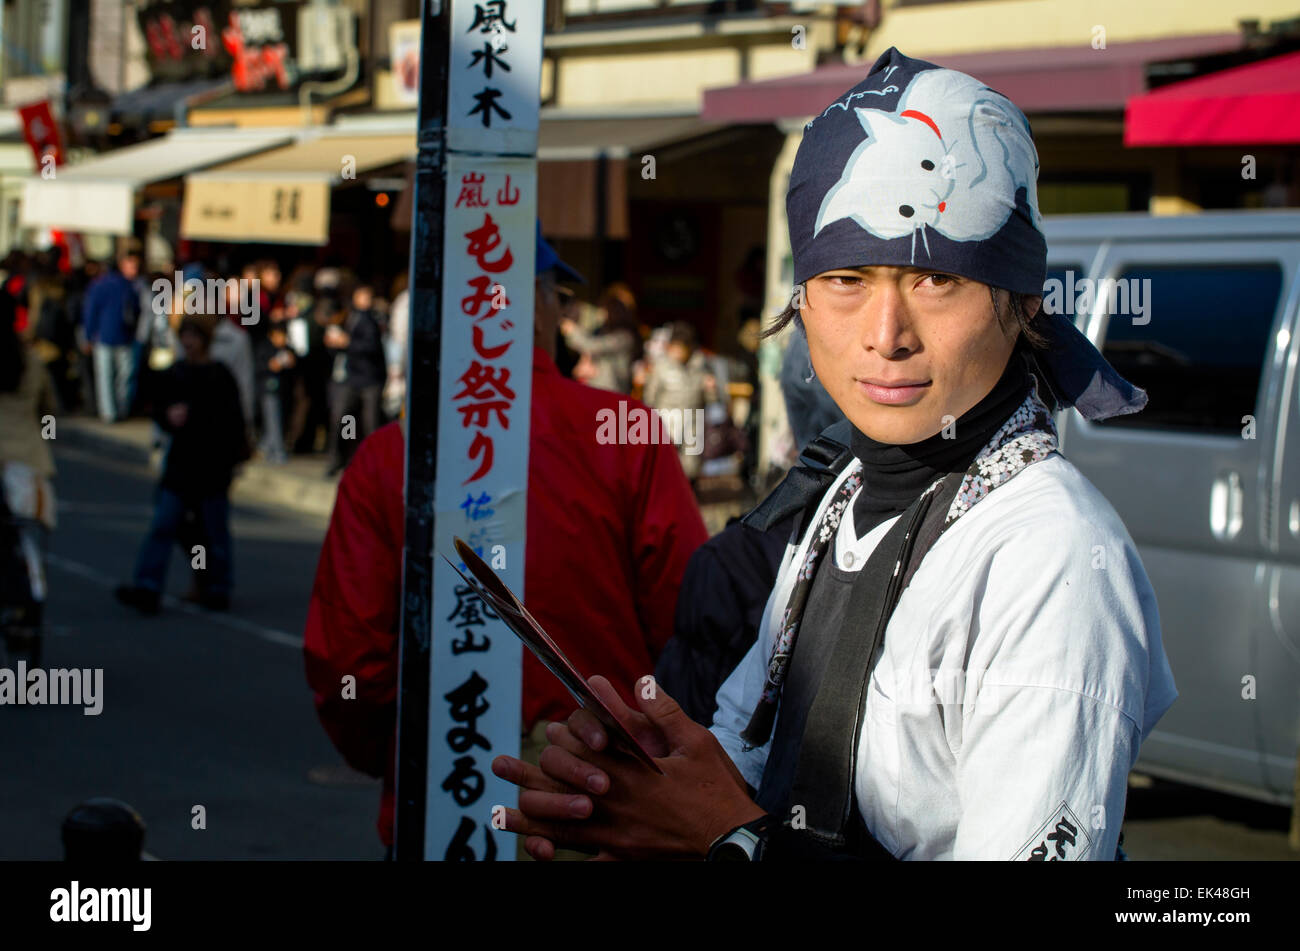 Rikscha-Puller (Treiber? Operator?) warten auf Benutzerdefiniert. Kyoto, Japan. Japanische junge Menschen tragen traditionelle Kleidung; Kleidung; Kostüm; Jinrikisha; Asien Stockfoto